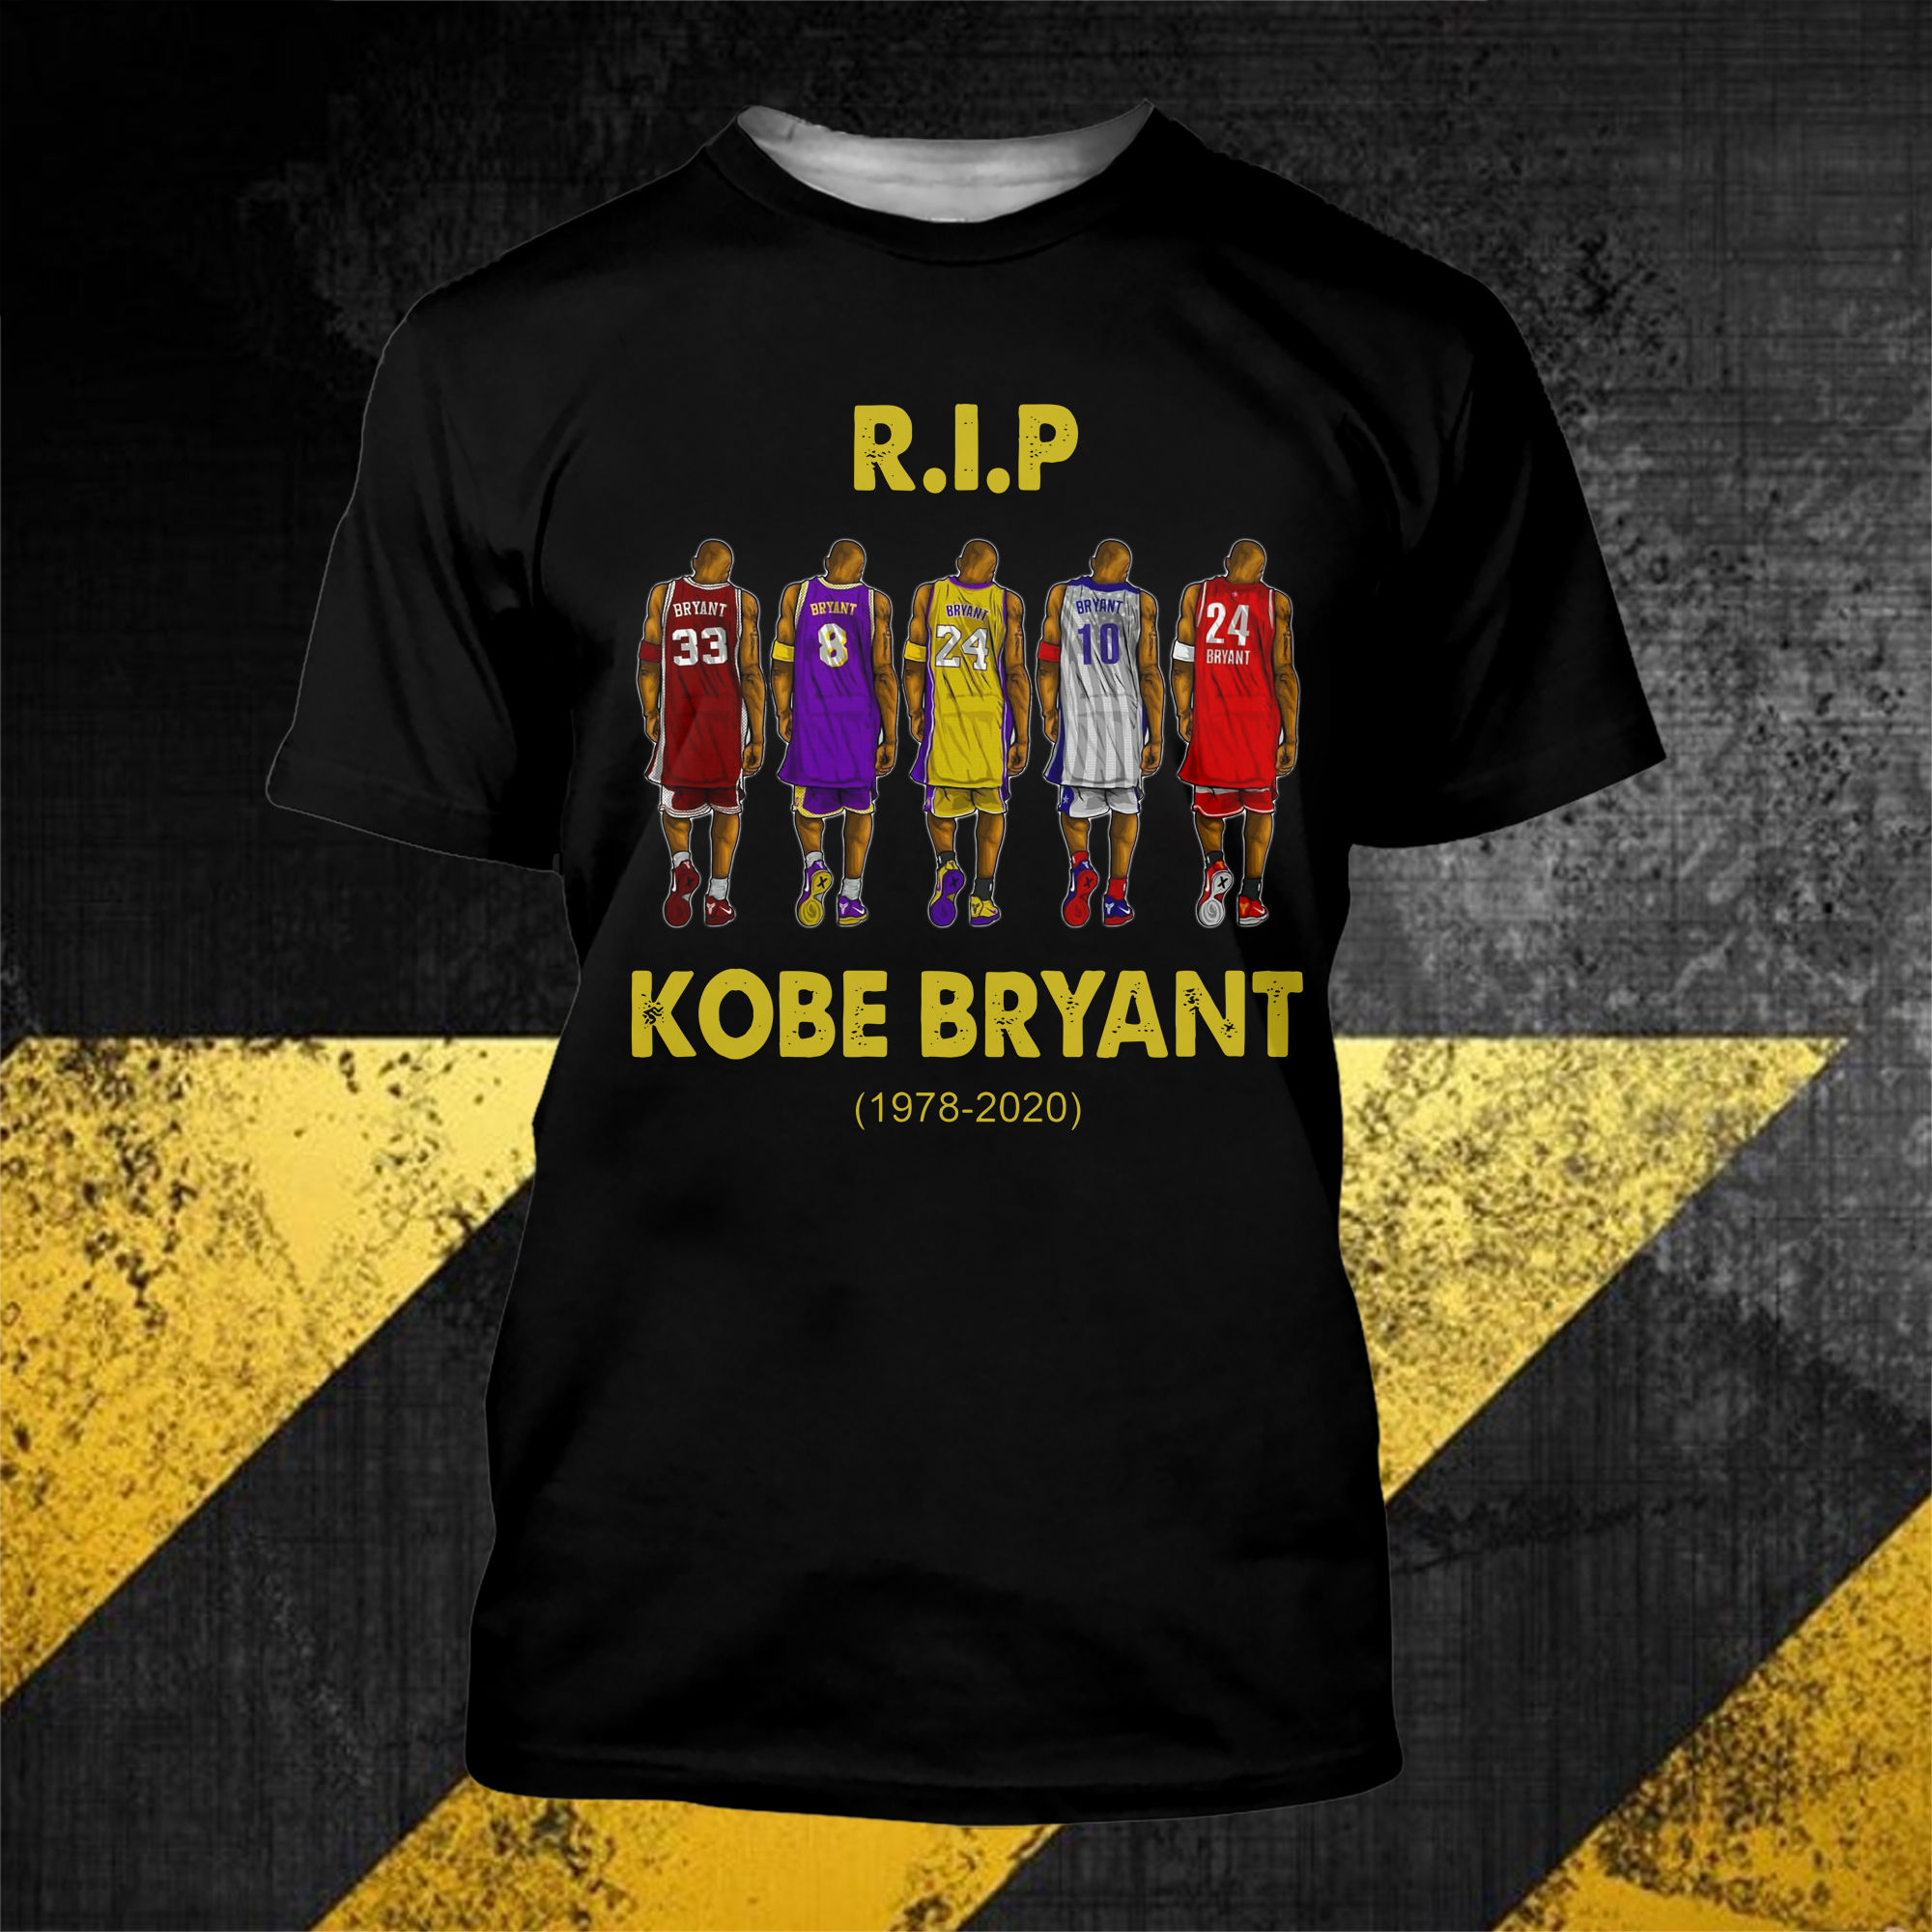 Rip Kobe Bryant shirt and v-neck